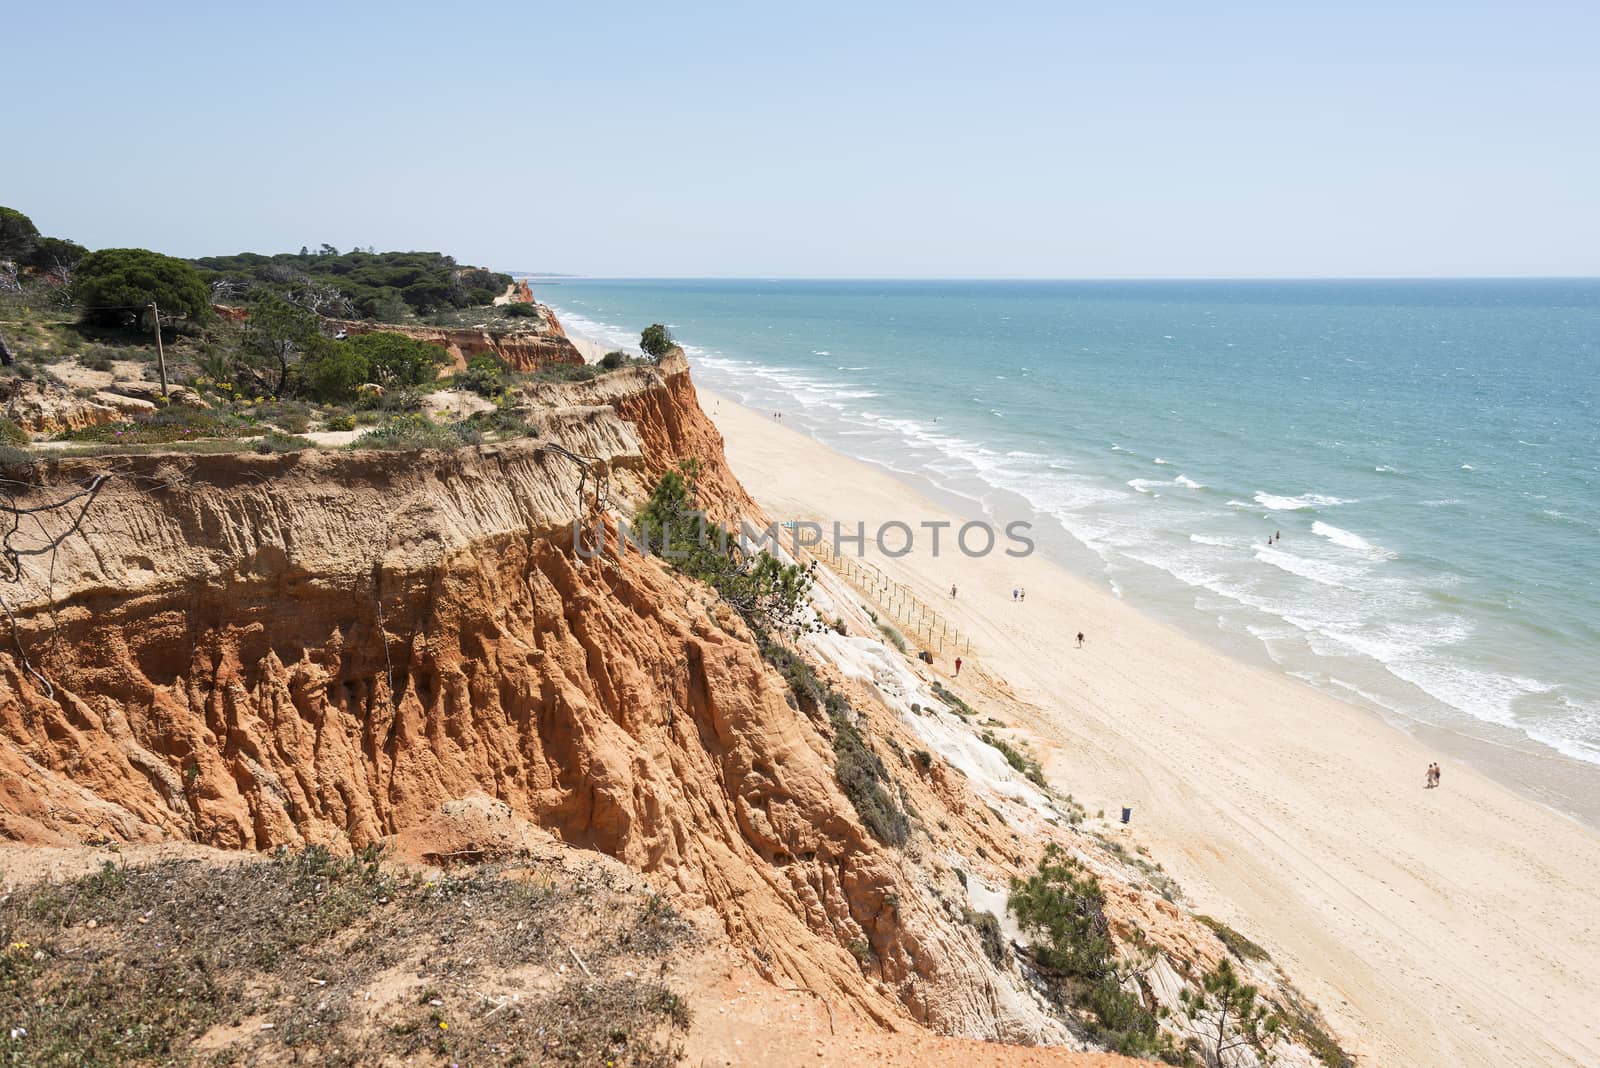 Cliffs at Praia da Falesia by compuinfoto